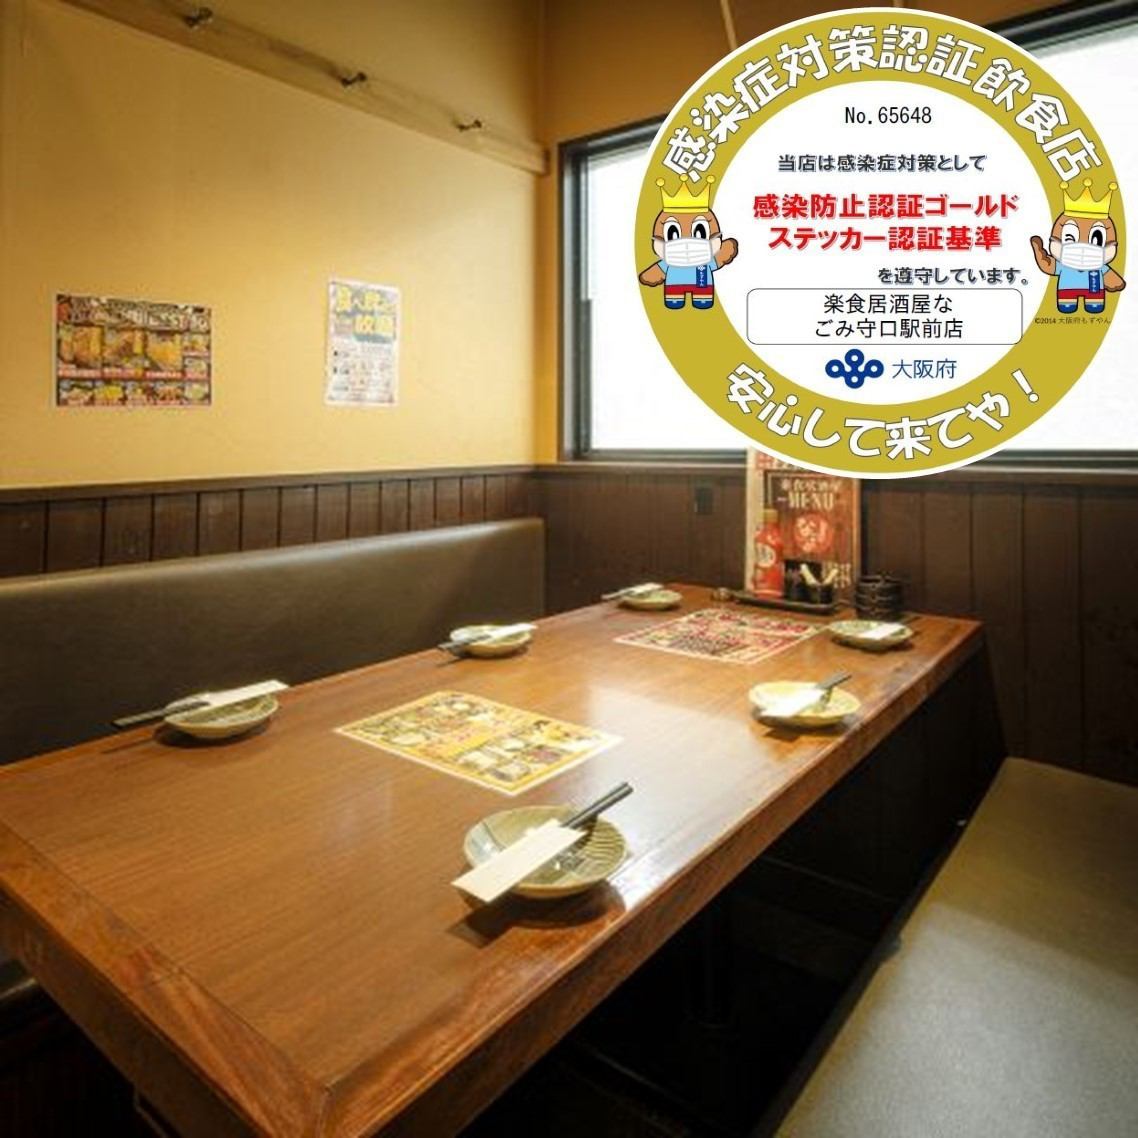 Nagomi派對套餐3,000日圓♪最適合各種宴會！